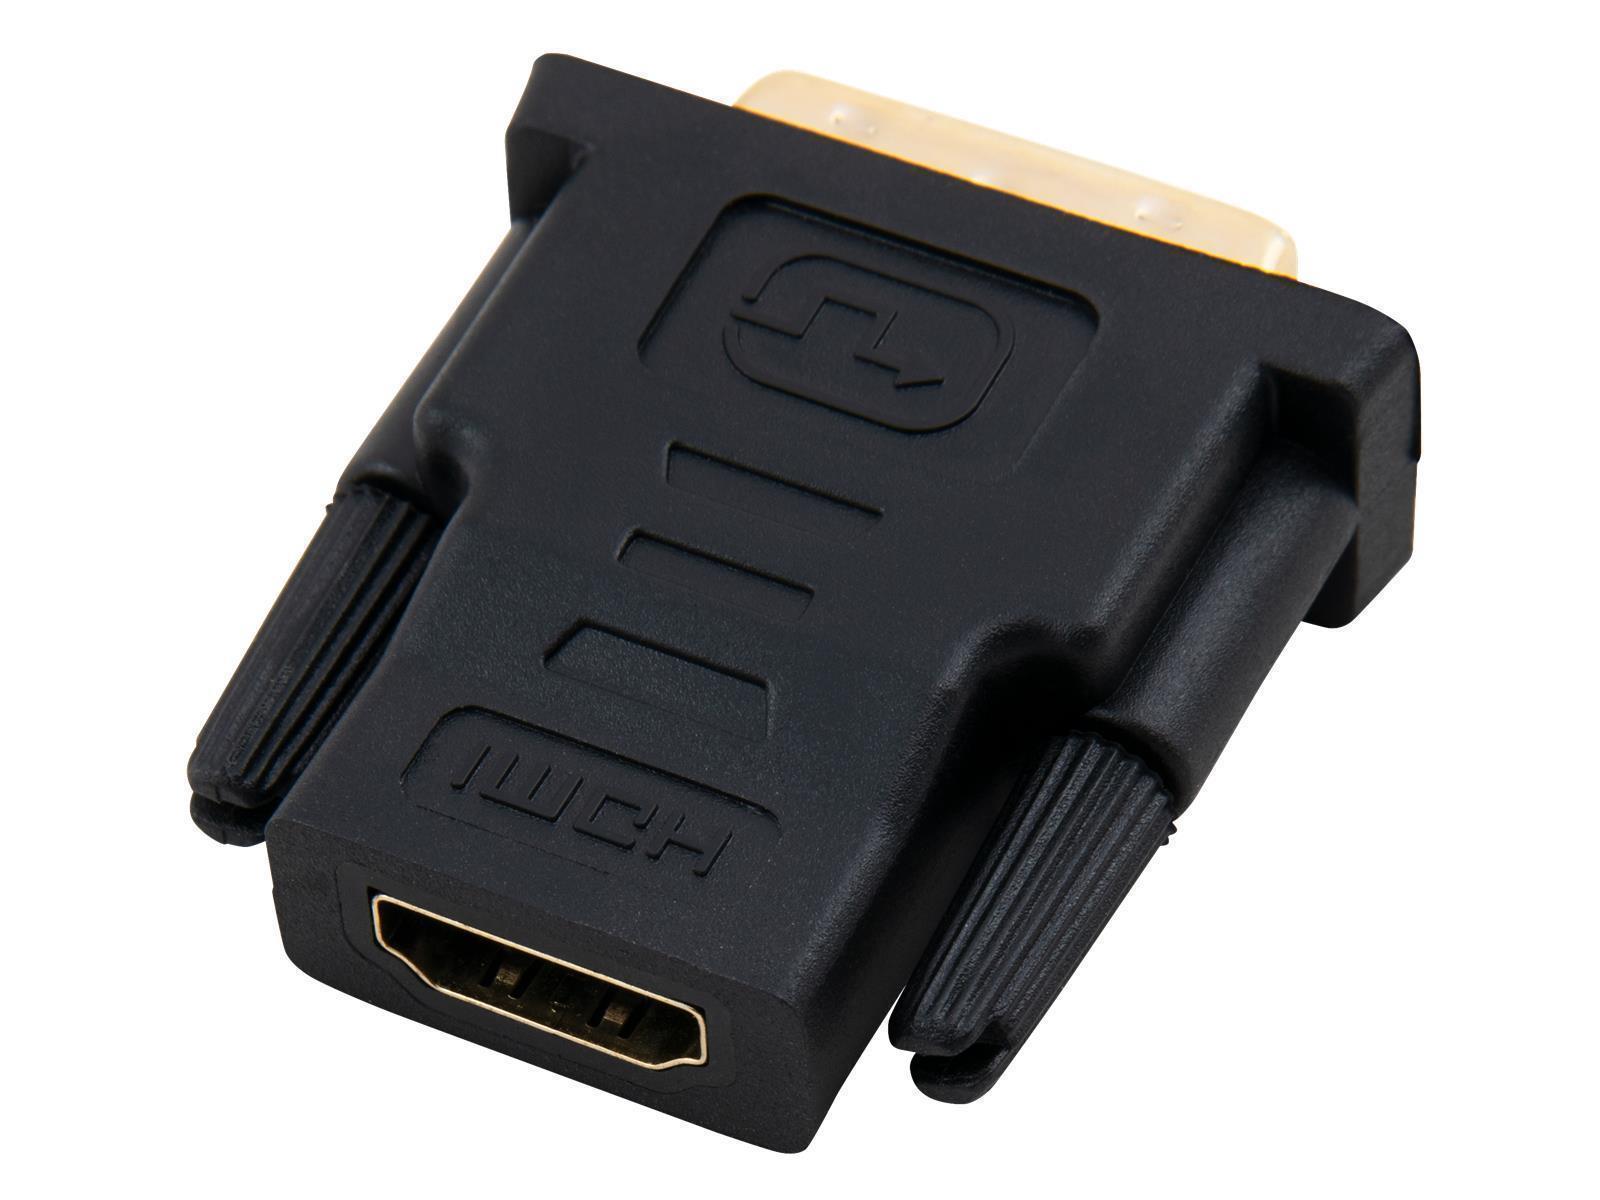 HDMI-Adapter HOLLYWOOD, HDMI Kupplung auf DVI Stecker, vergoldete Kontakte